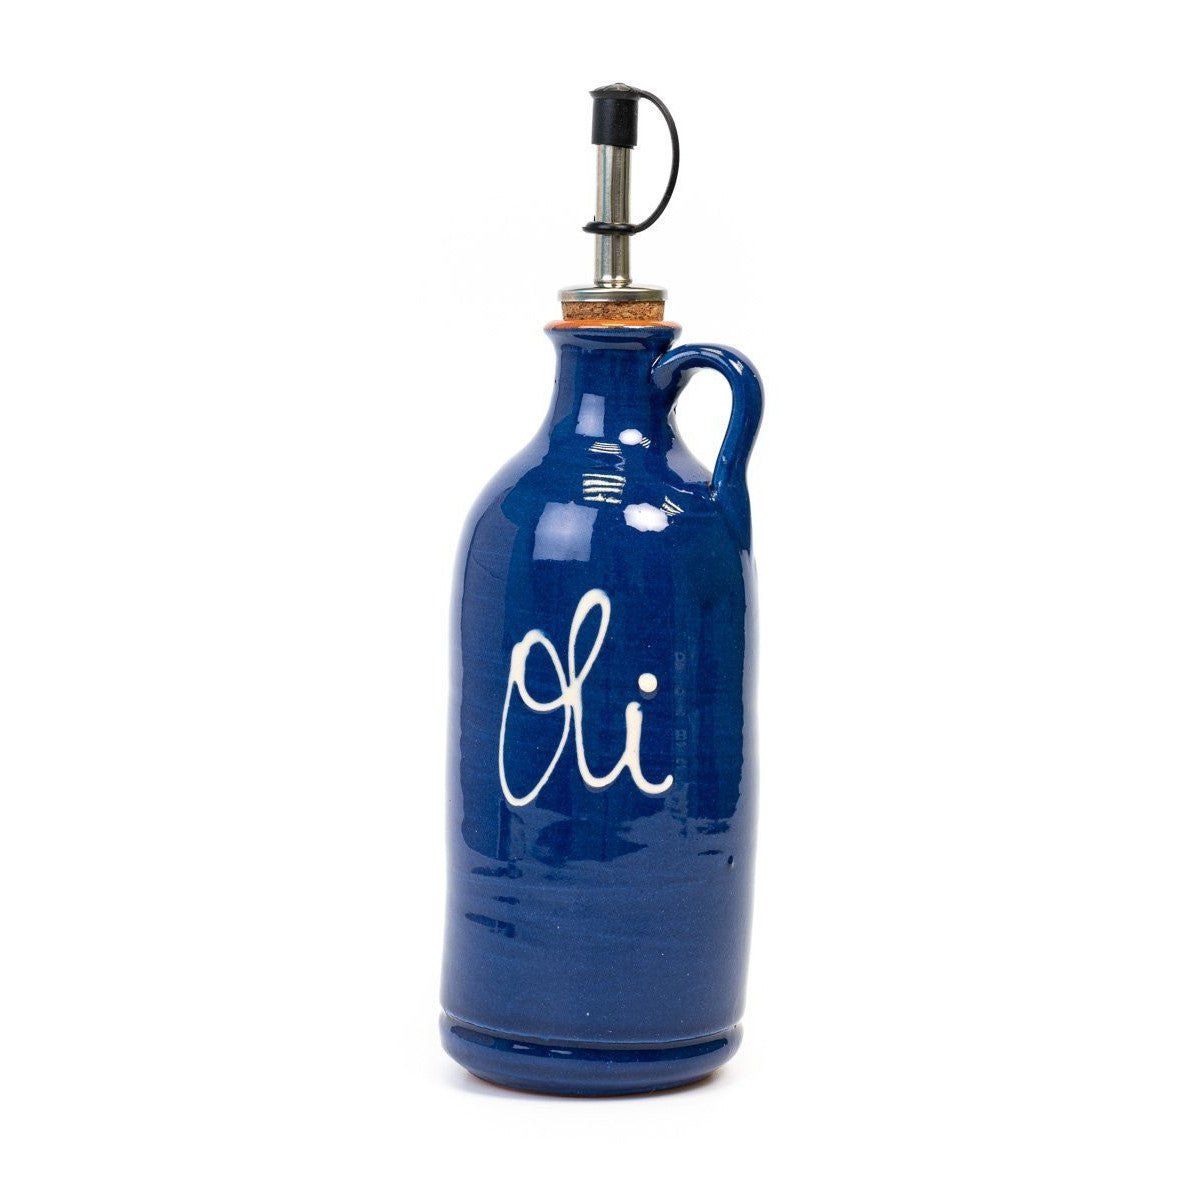 OIivenöl Flasche zum befüllen - volllasiert und lackiert dunkelblau (22cm) - Gourmet Markt - Gourmet Markt